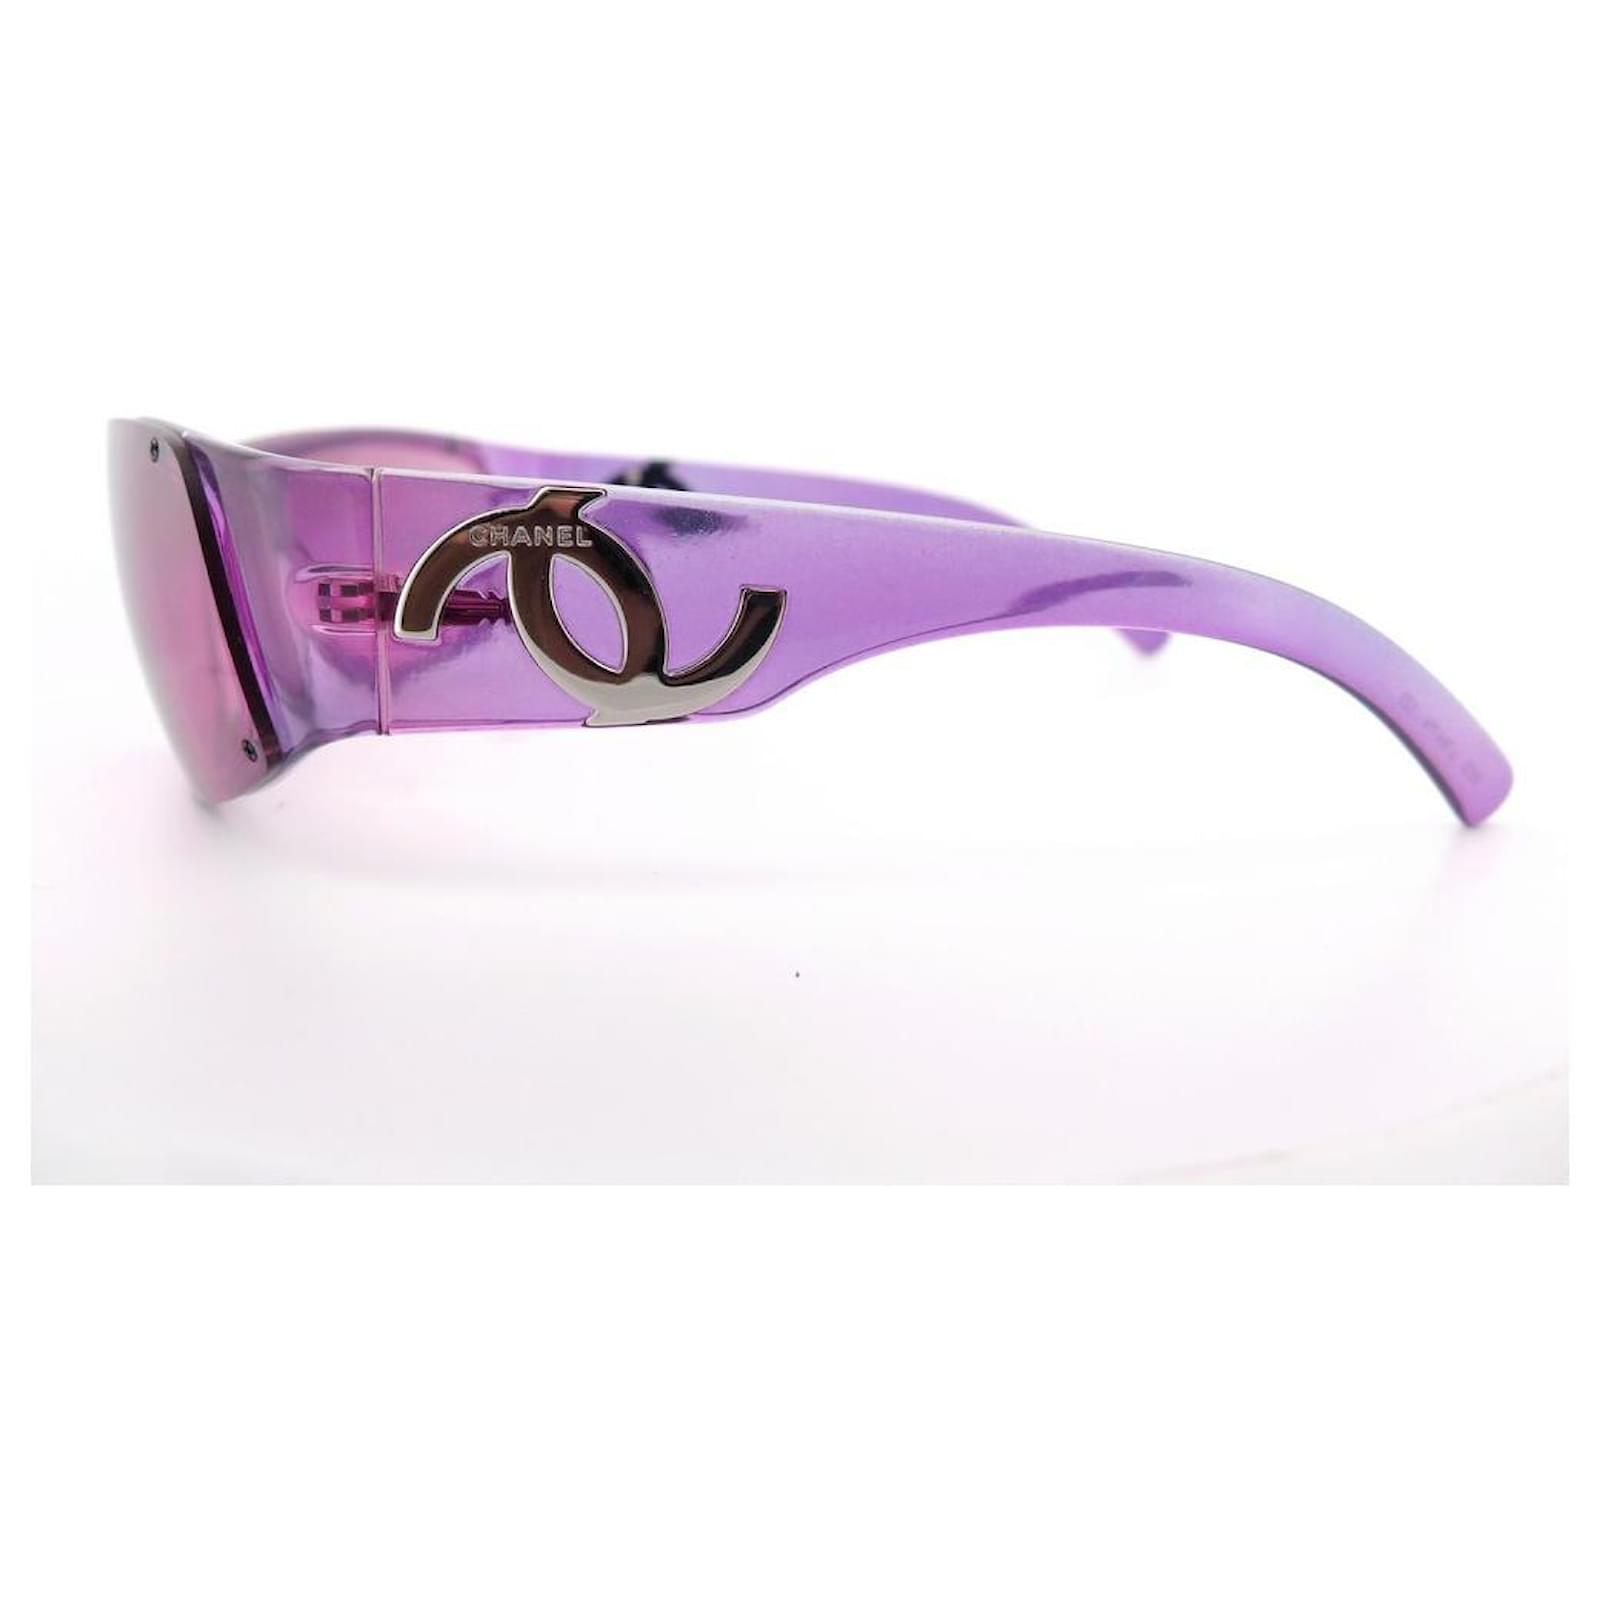 Chanel sunglasses 5072 IN PURPLE PLASTIC PURPLE SUNGLASSES BOX